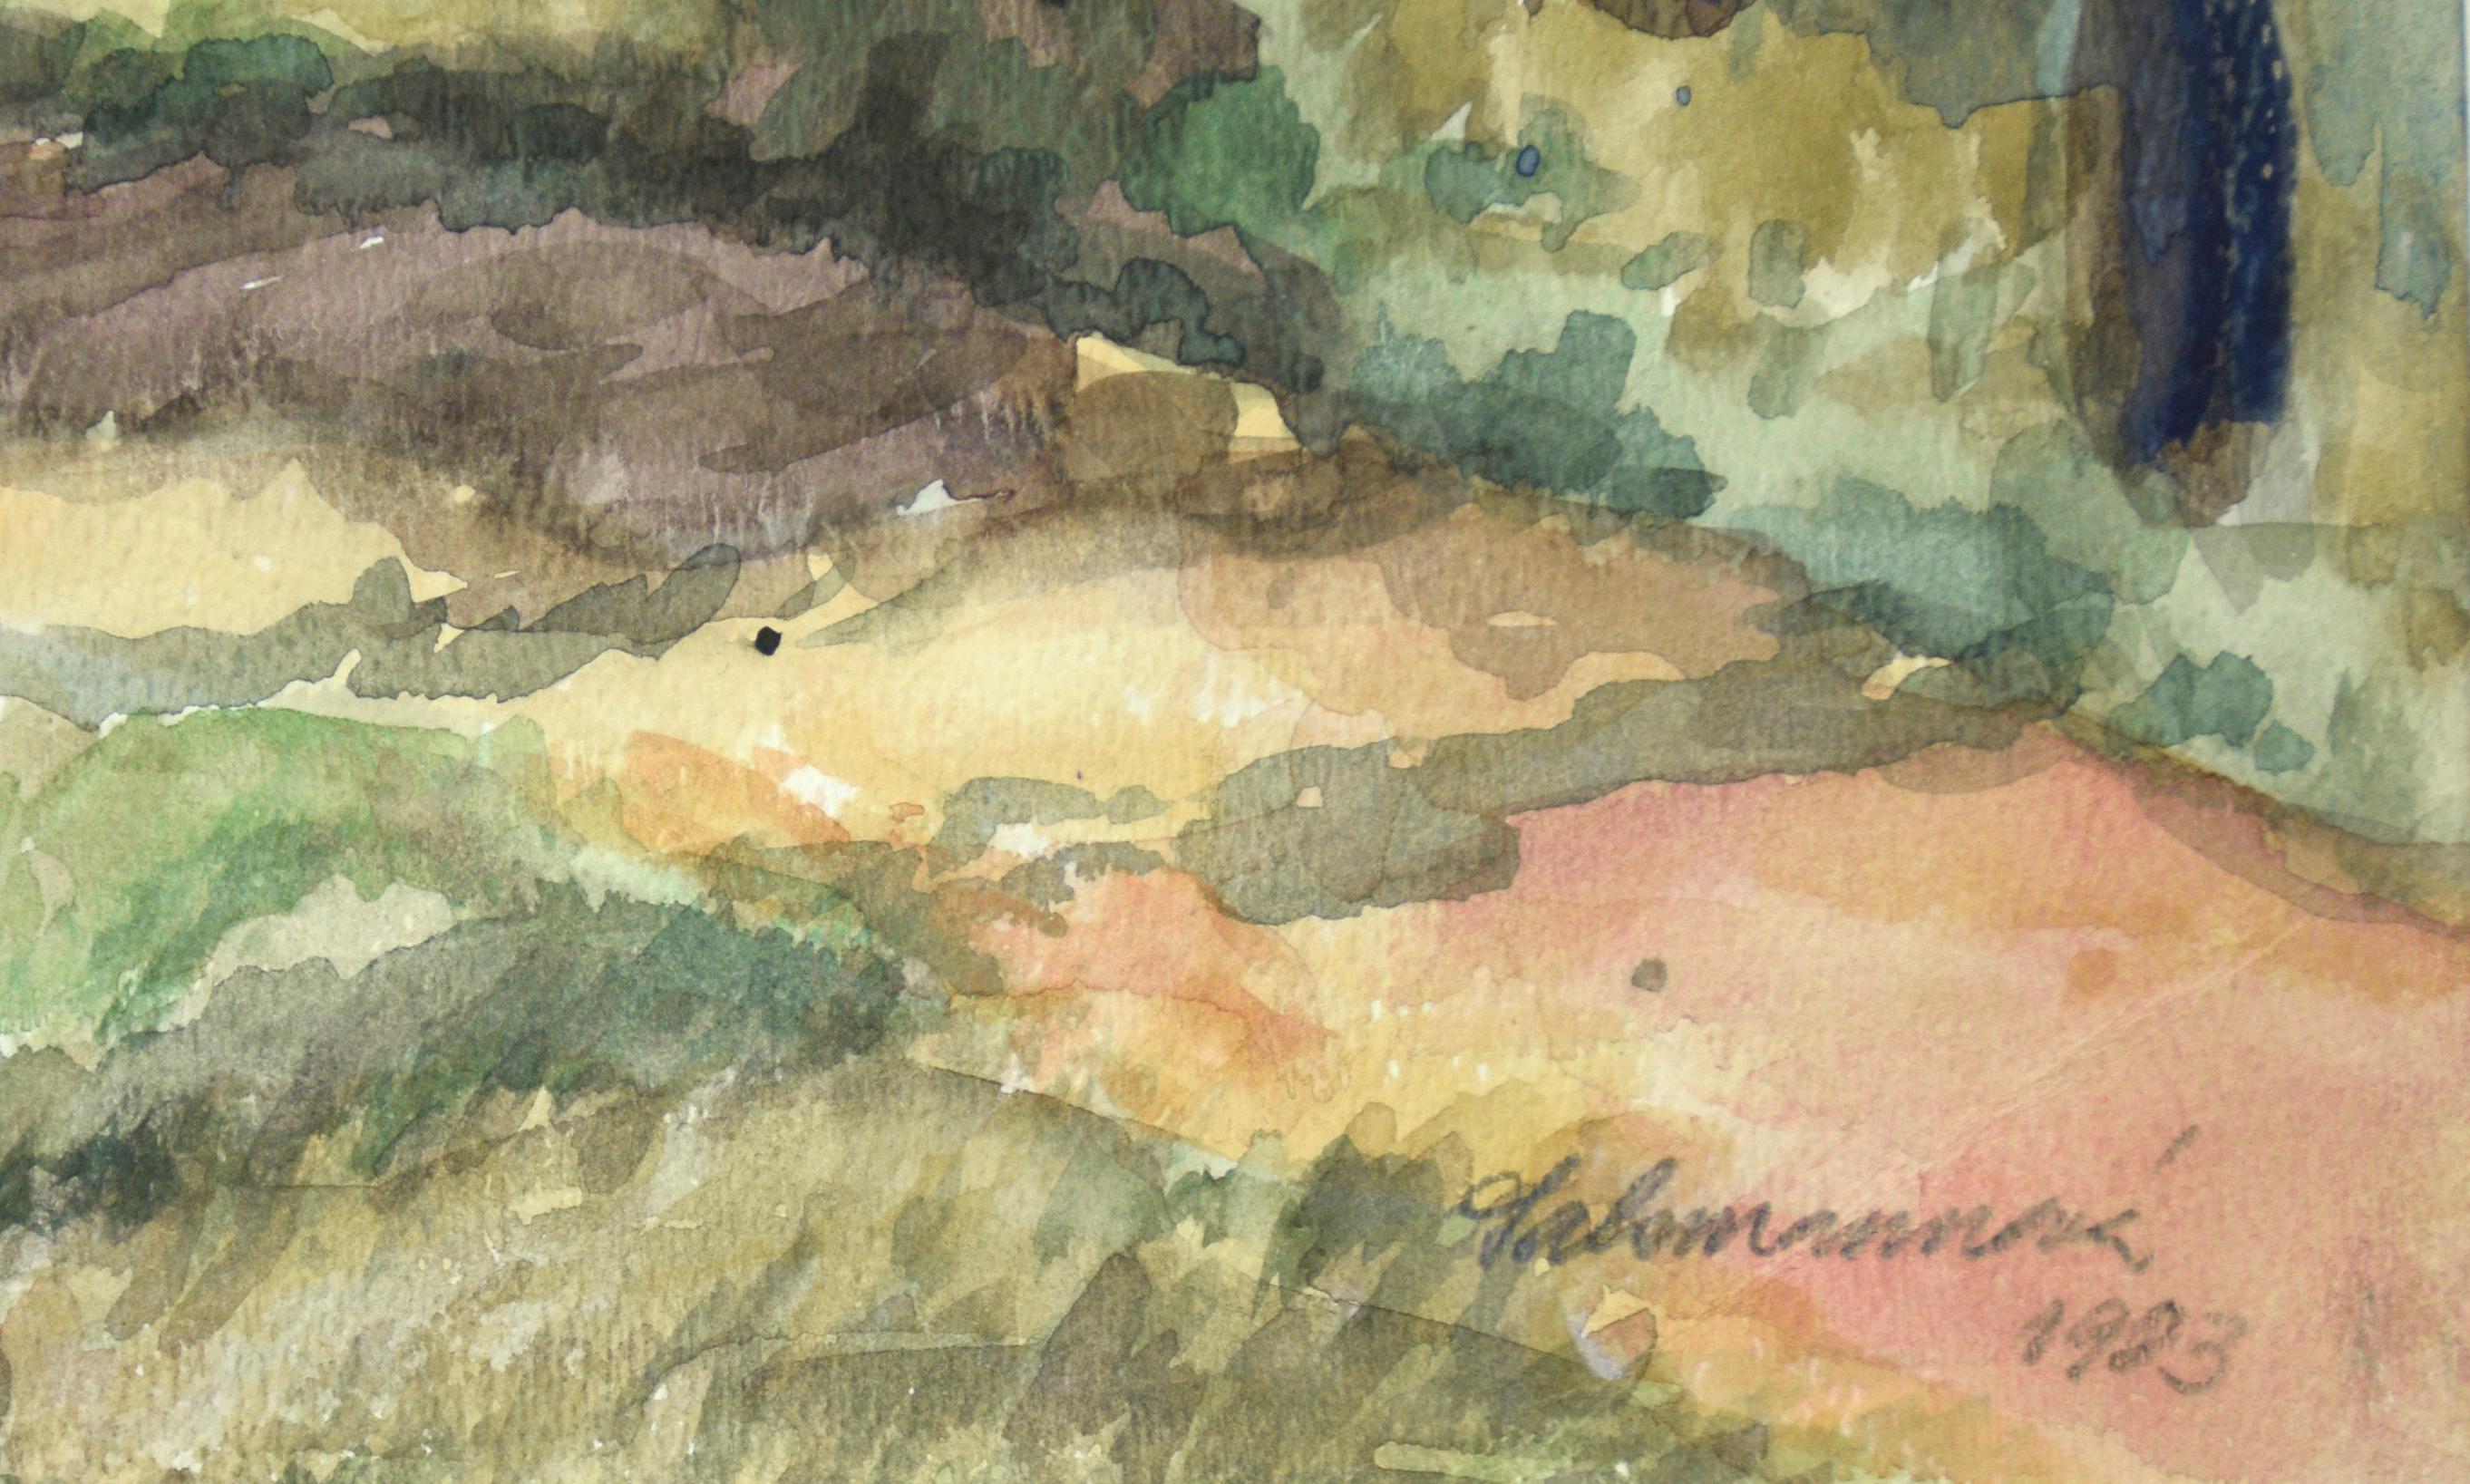 A Walk in the Woods - Original Aquarellgemälde 1983

Ein Aquarell aus üppigen, bunten Grüntönen bildet diesen bewaldeten Pfad mit Zypressen und Eichen, ein Naturwunderland für jeden Spaziergang an der Küste. Signiert vom Künstler František Salamánek